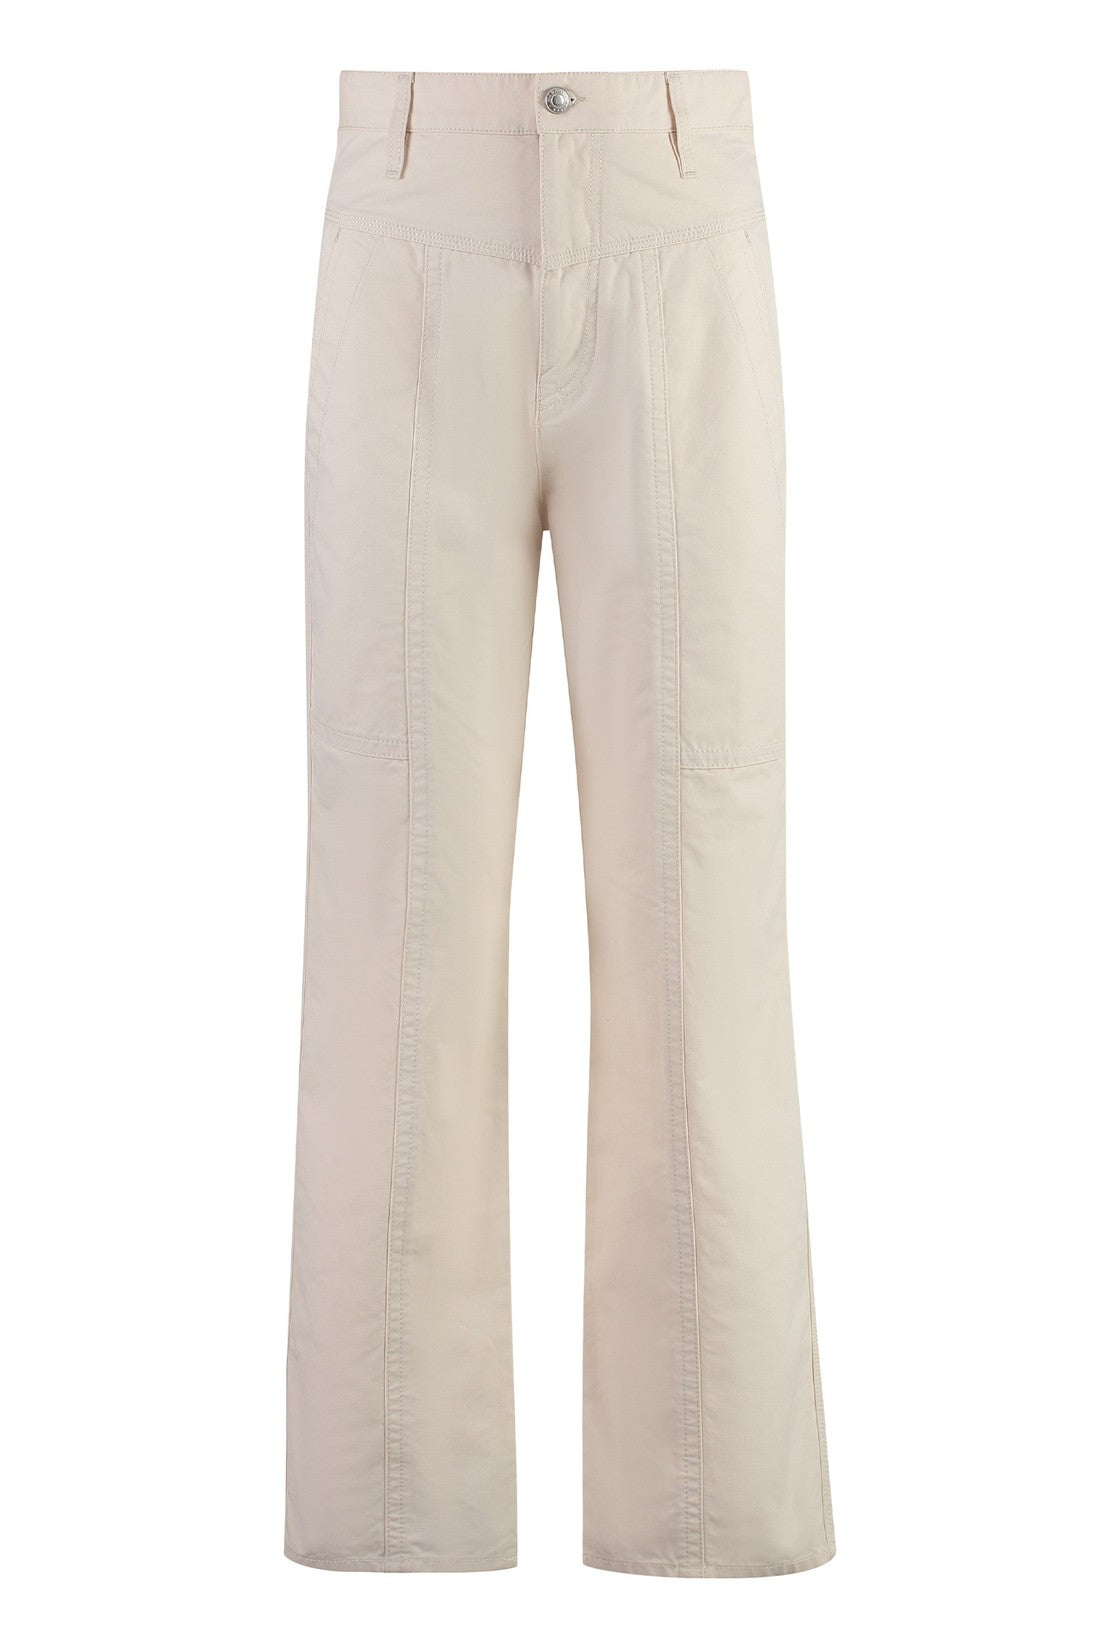 Marant étoile-OUTLET-SALE-Driane cotton trousers-ARCHIVIST